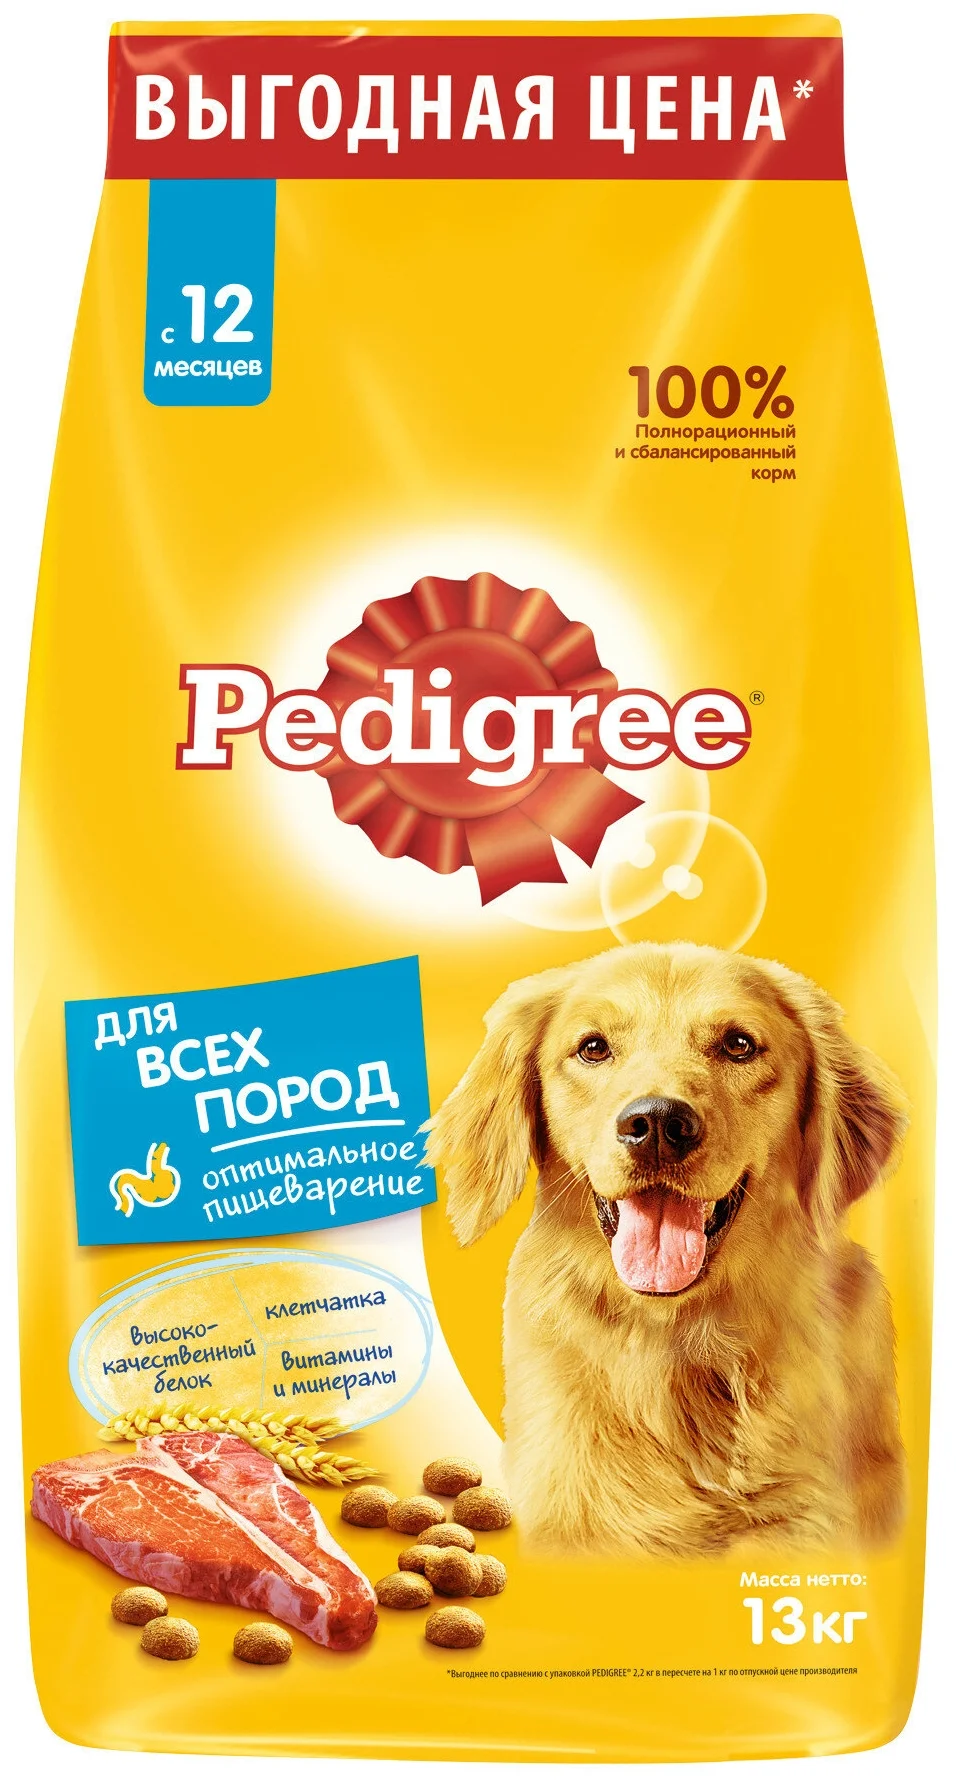 Pedigree - особые потребности: при чувствительном пищеварении, для здоровья кожи и шерсти, для ухода за ротовой полостью